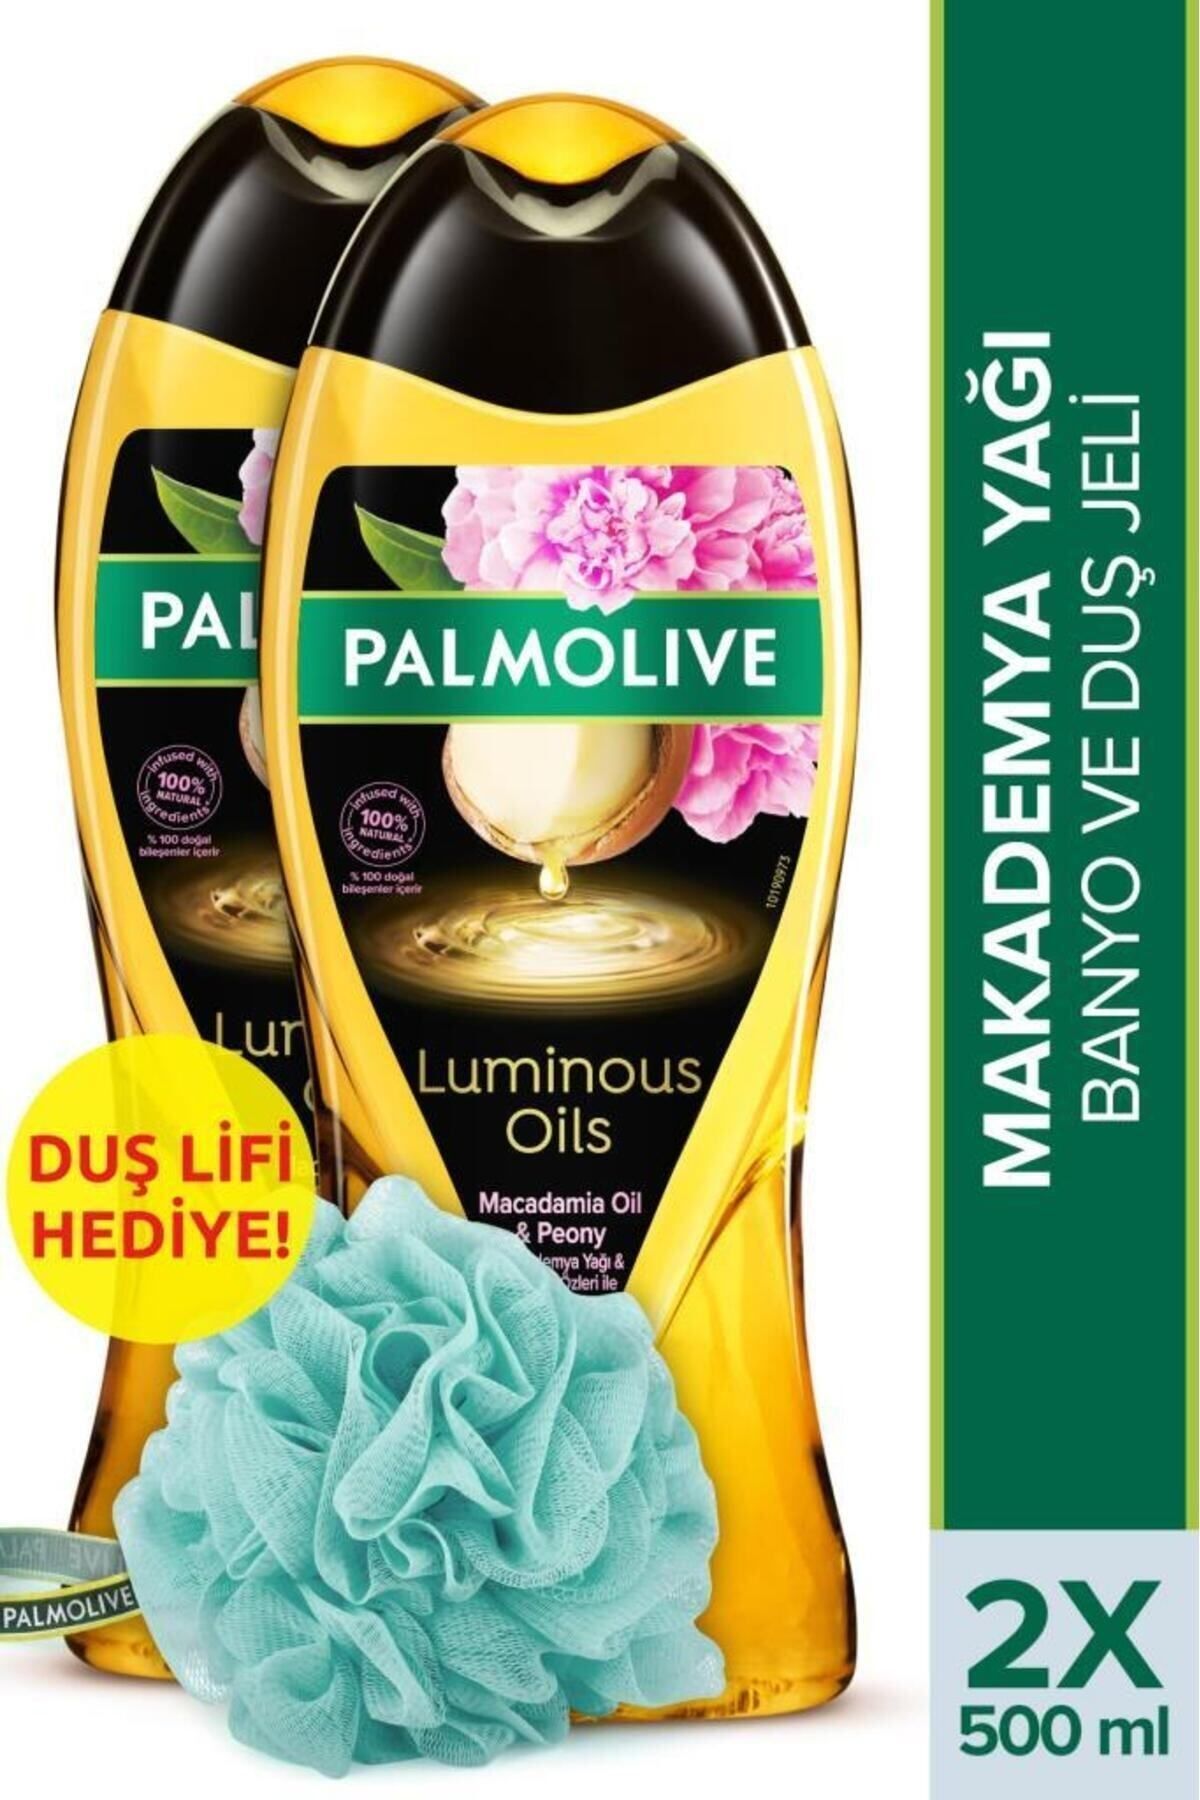 Palmolive Luminous Oils Makademya Yağı Banyo ve Duş Jeli 500 ml x 2 Adet + Duş Lifi Hediyeli